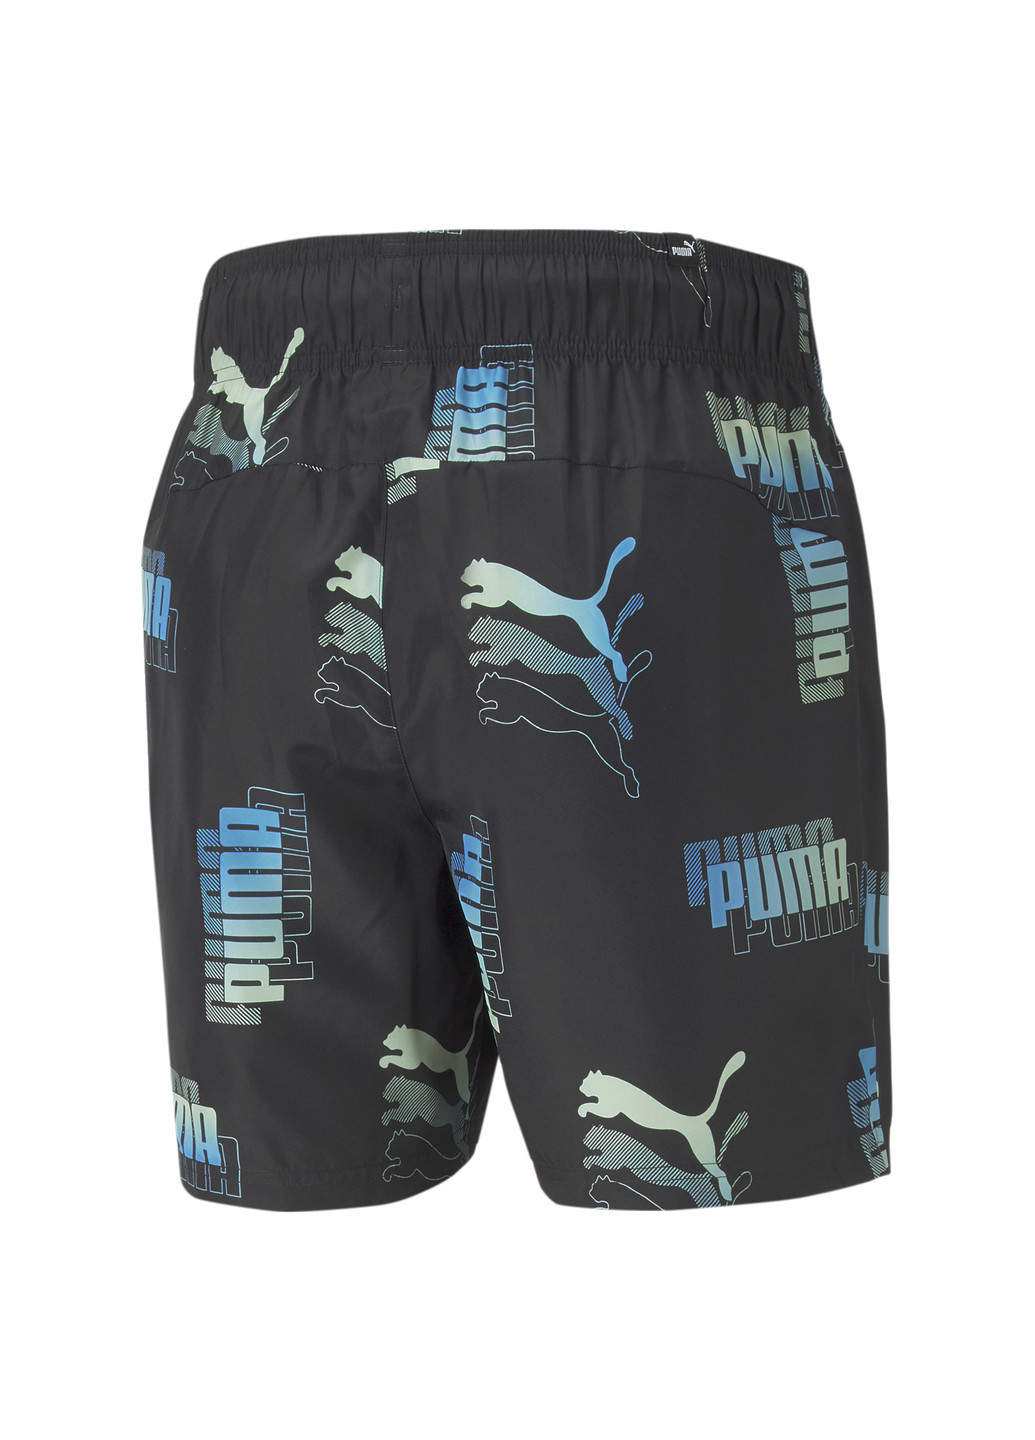 Шорты Power Summer Printed Men’s Shorts Puma однотонные чёрные спортивные полиэстер